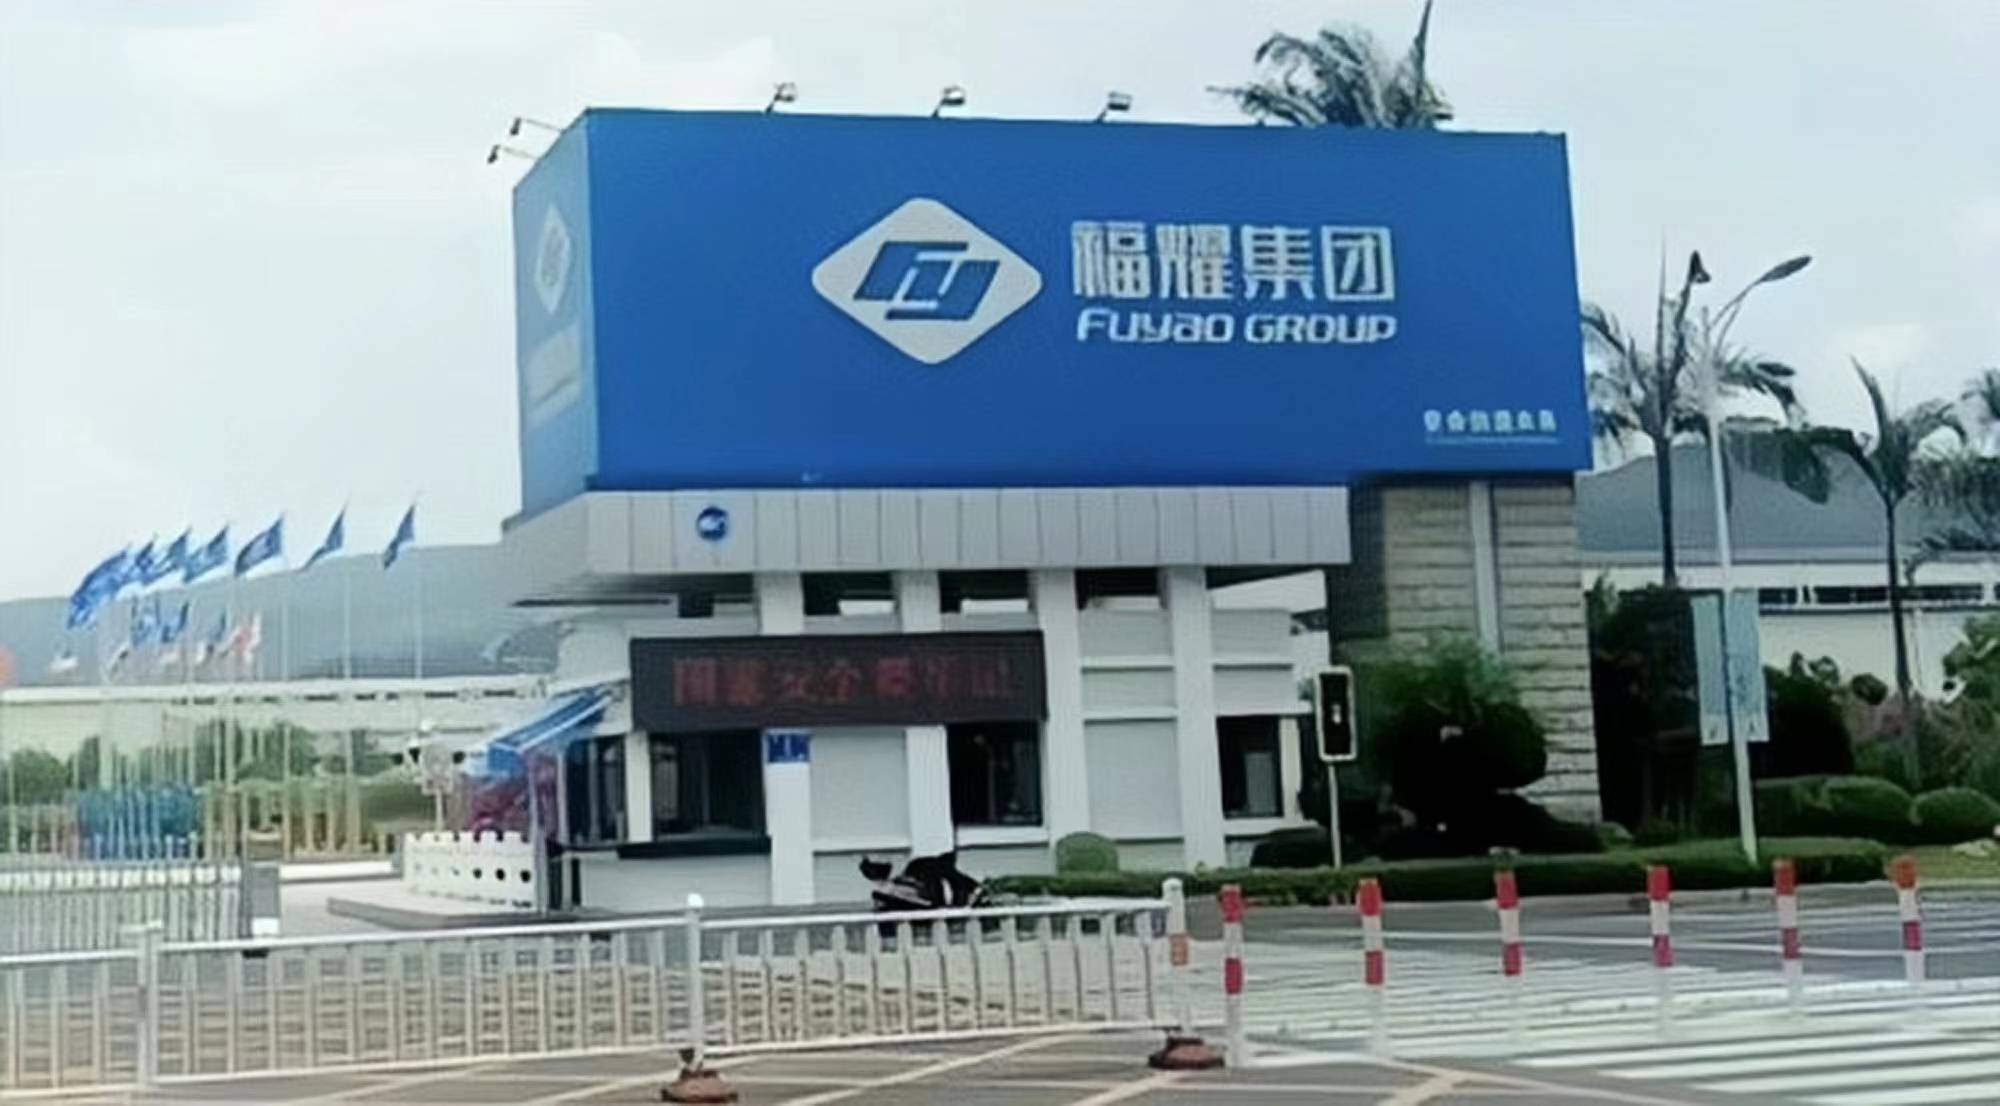 提出申请,搬到宏路,又去上海请耀华玻璃厂技术入股,成立了福耀集团